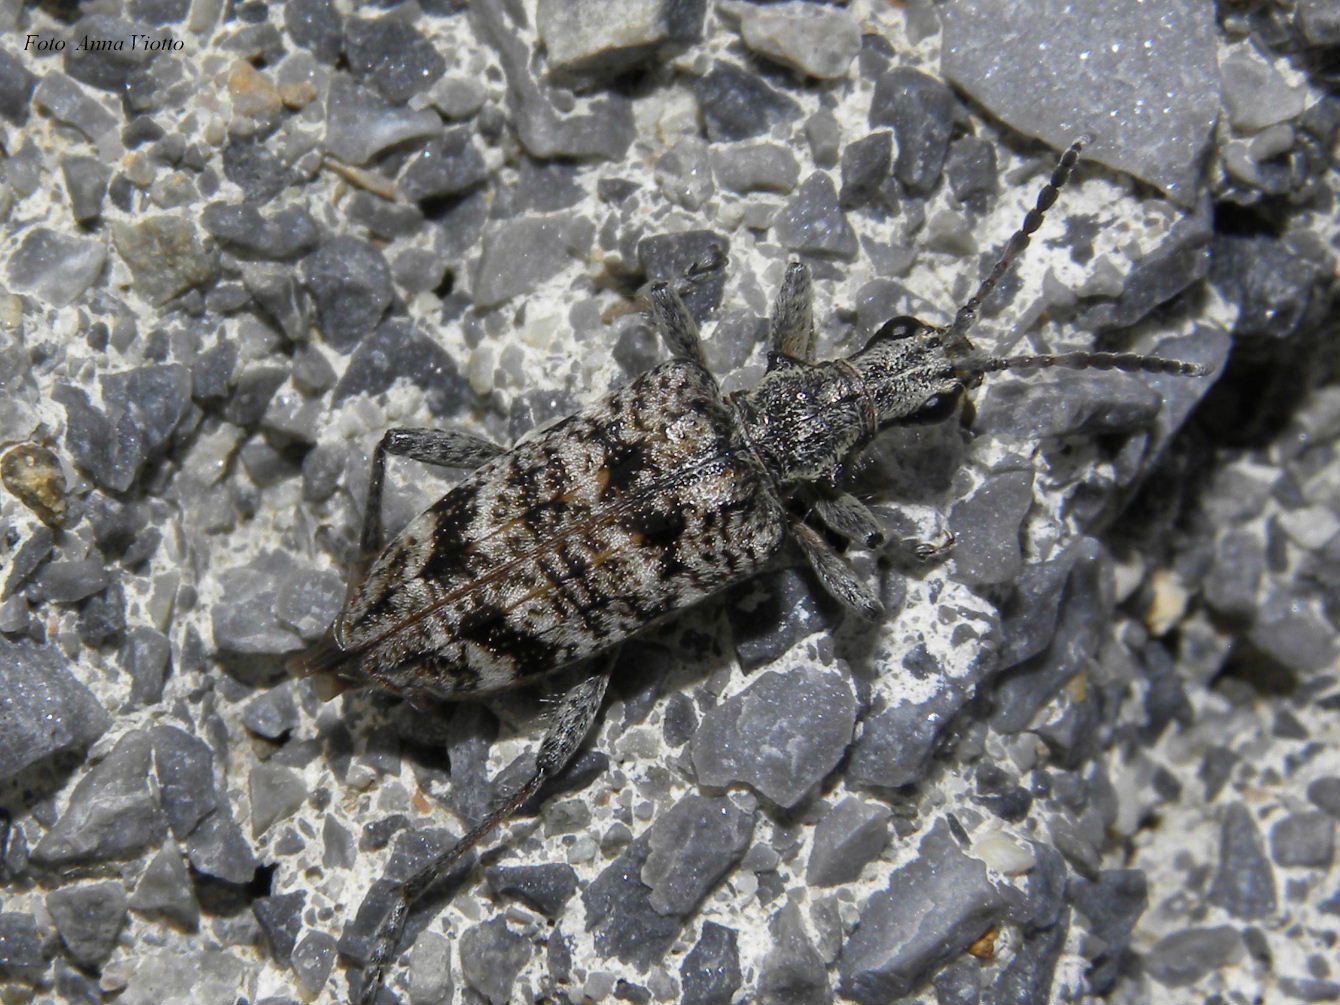 Rhagium inquisitor (Cerambycidae) - M. Saccarello (IM)